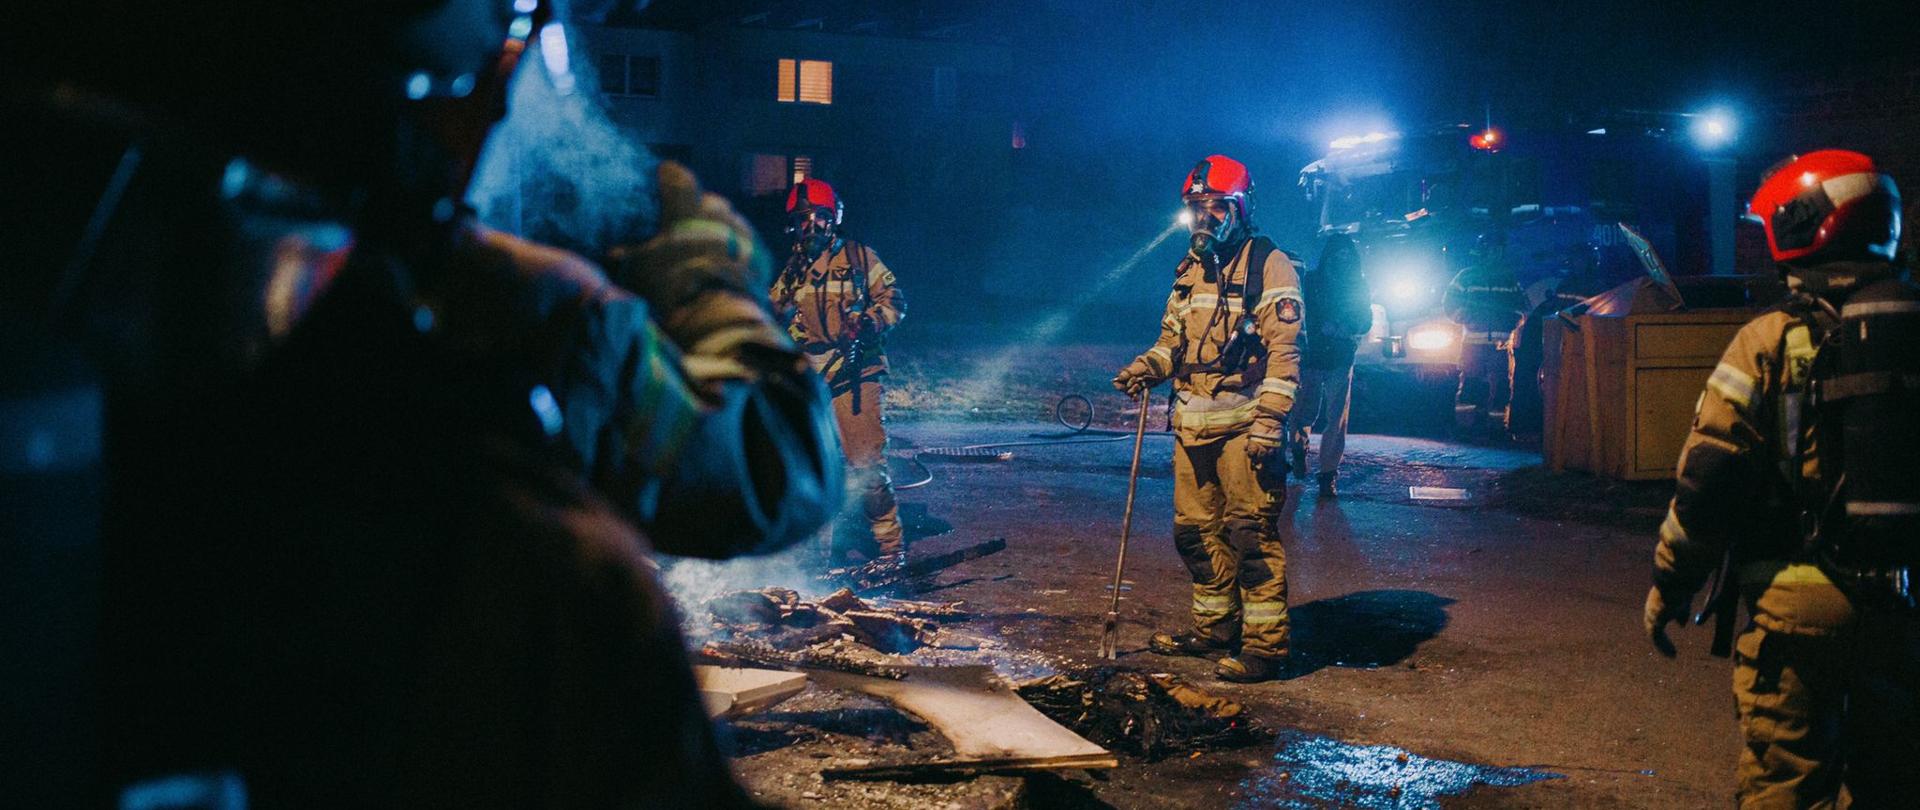 Podsumowanie zdarzeń w dniach 21.03 - 27.03.2022 r. - zdjęcie przedstawia strażaków ubranych w sprzęt ochrony układu oddechowego podczas dogaszania pożaru